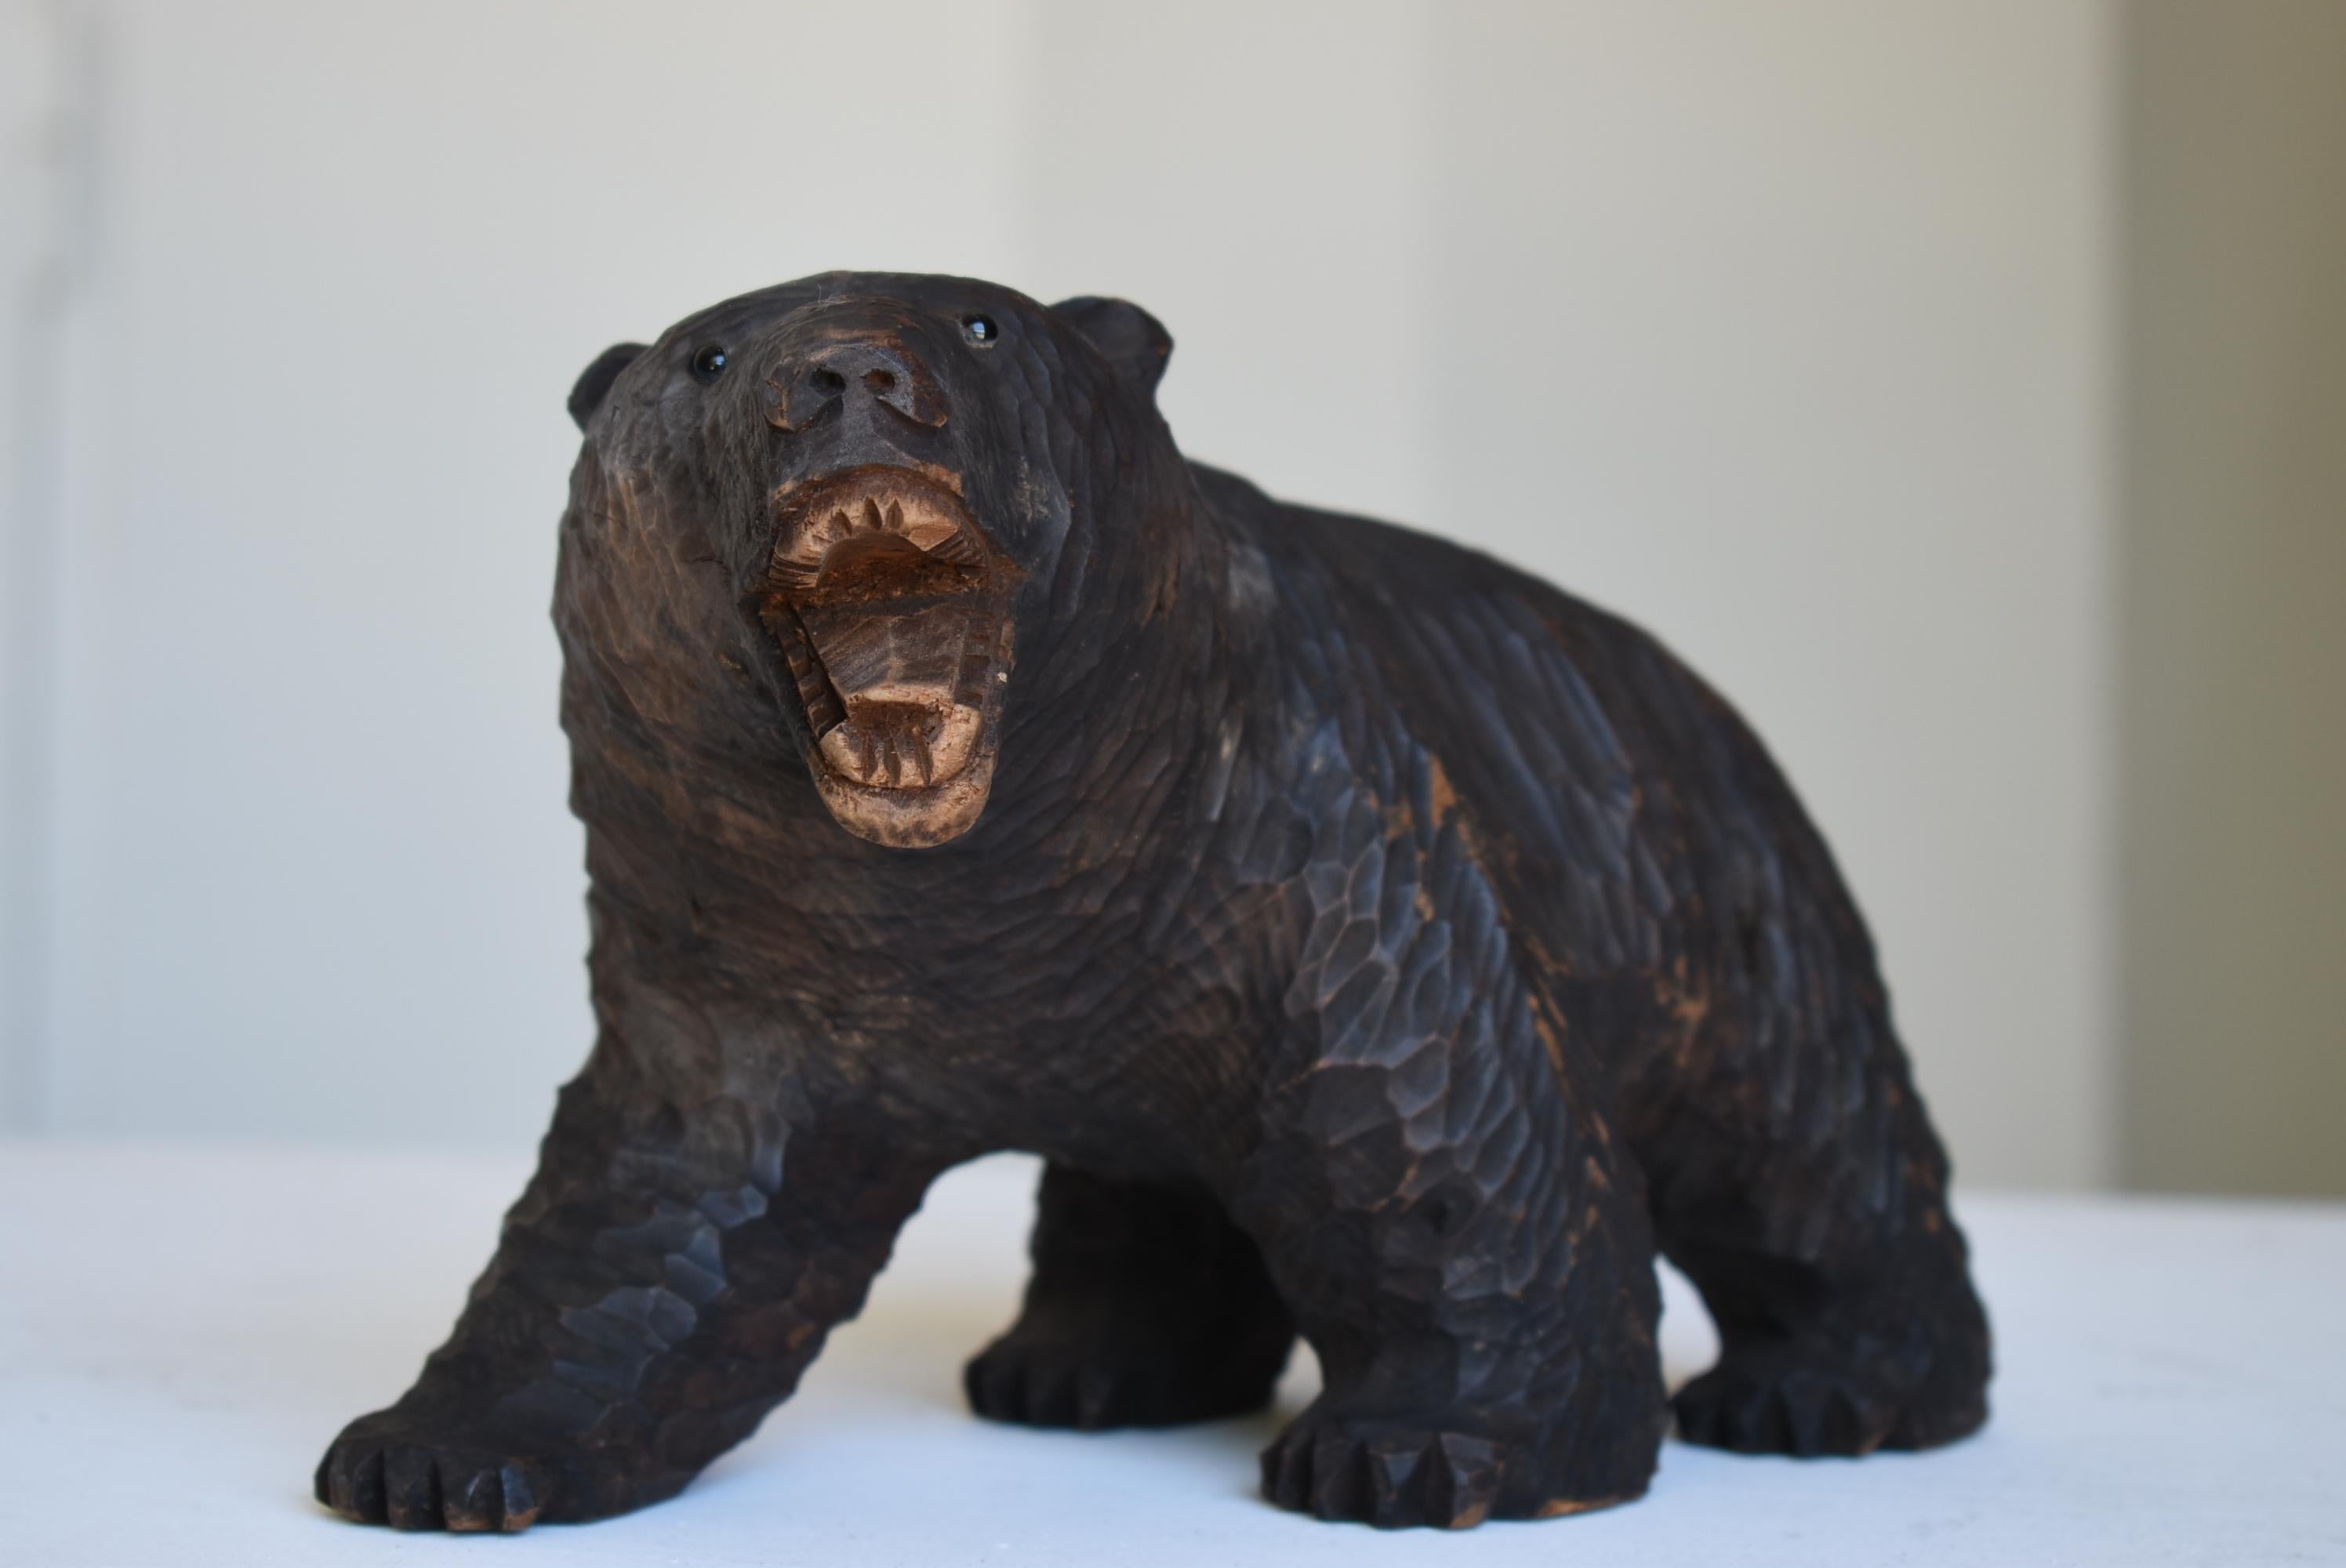 Il s'agit d'un artisanat en bois en forme d'ours.
Principalement fabriqués à Hokkaido.
Il s'agit d'une sculpture en bois réalisée entre 1930 et 1950.

Les yeux sont en verre.
Ce type de produit est rare au Japon.

Un ours digne avec une expression